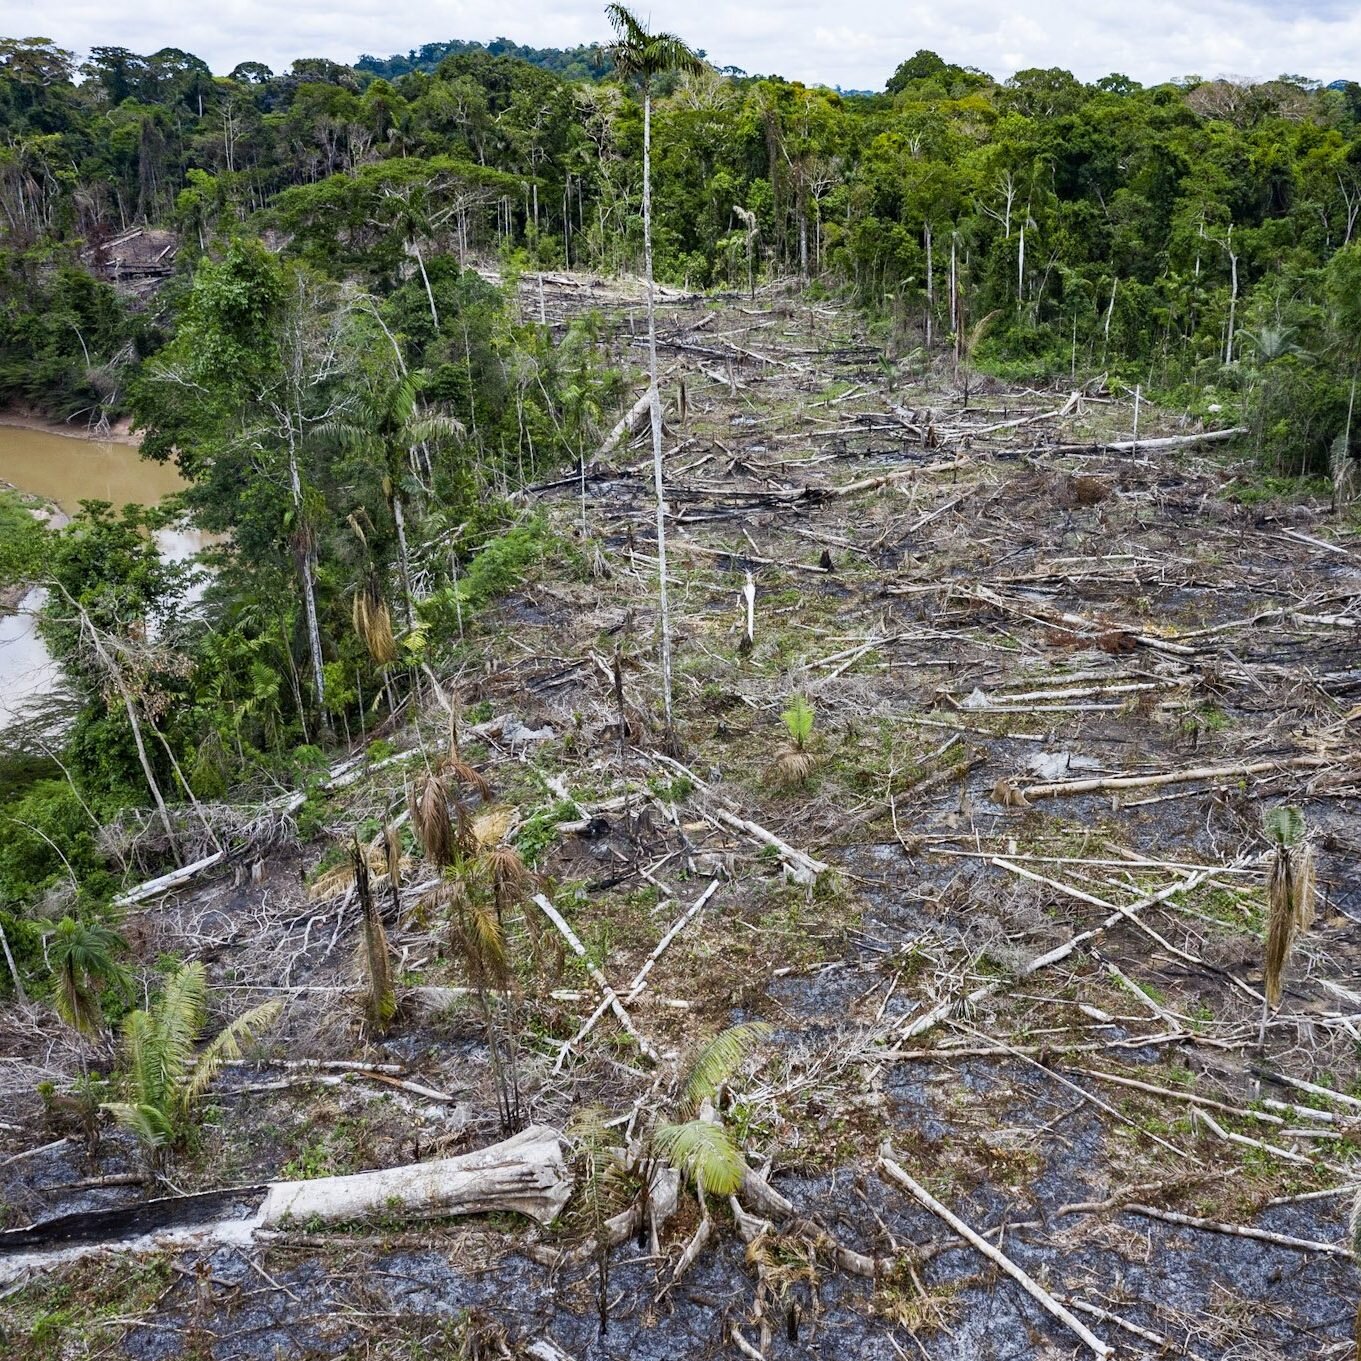   New deforestation, Sepahua River.  